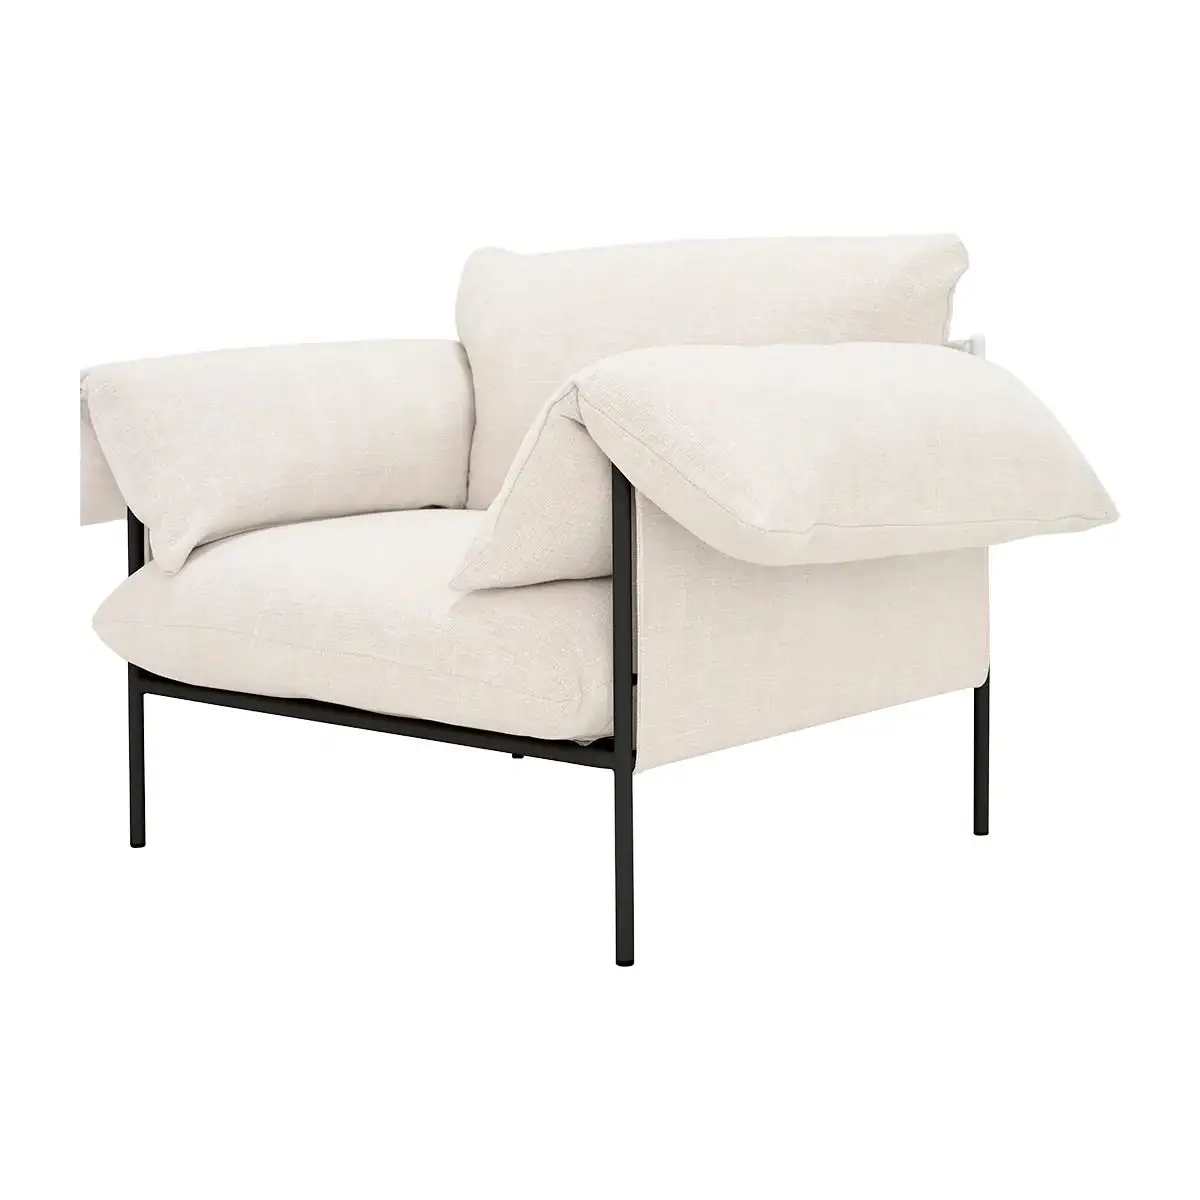 تصميم أسترالي-كرسي فولي مملوء بالريش/لأسفل لغرفة المعيشة كرسي صالة معدني نورديك